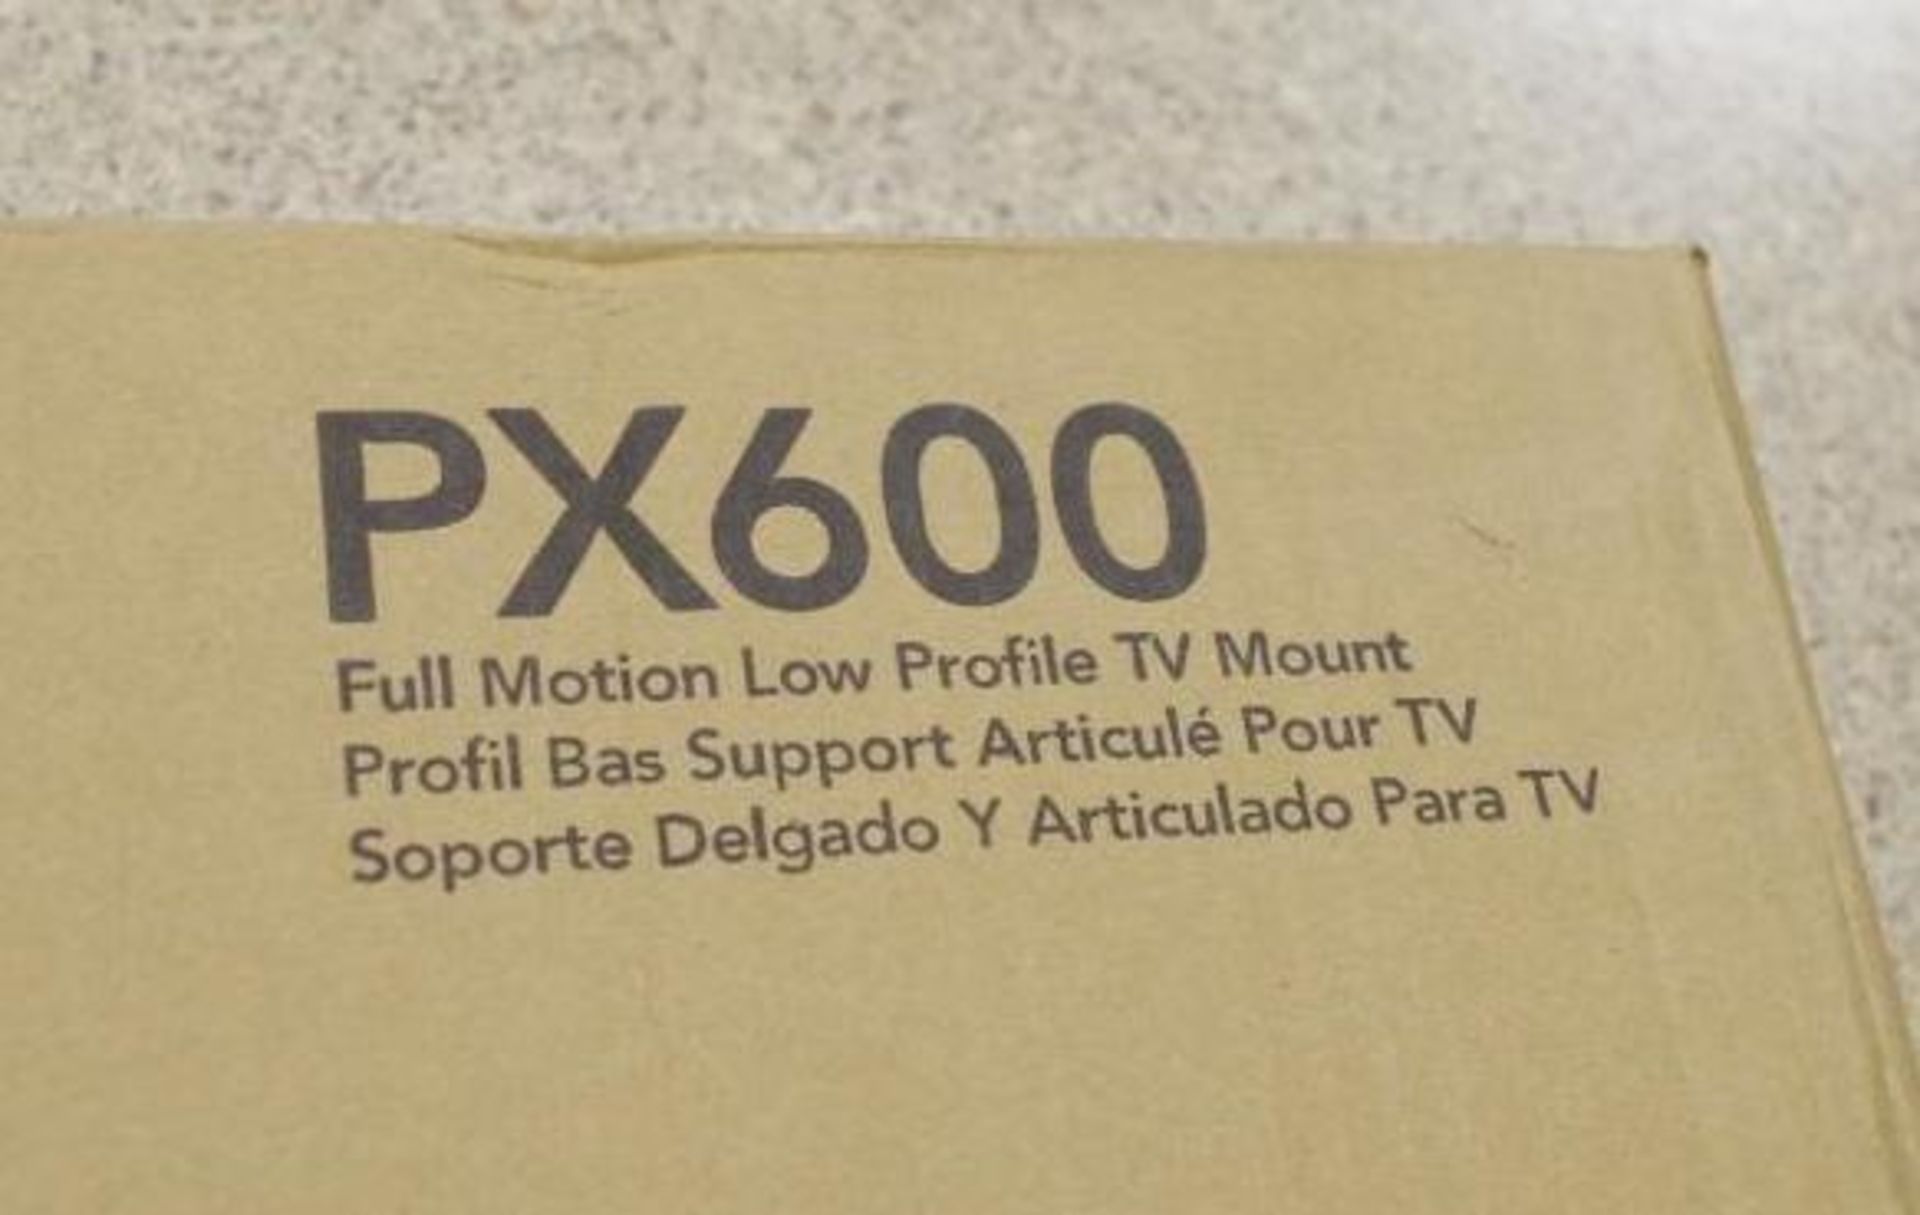 NEW KANTO Full Motion Flat Panel TV Mount, Black M/N PX600 - Image 5 of 5